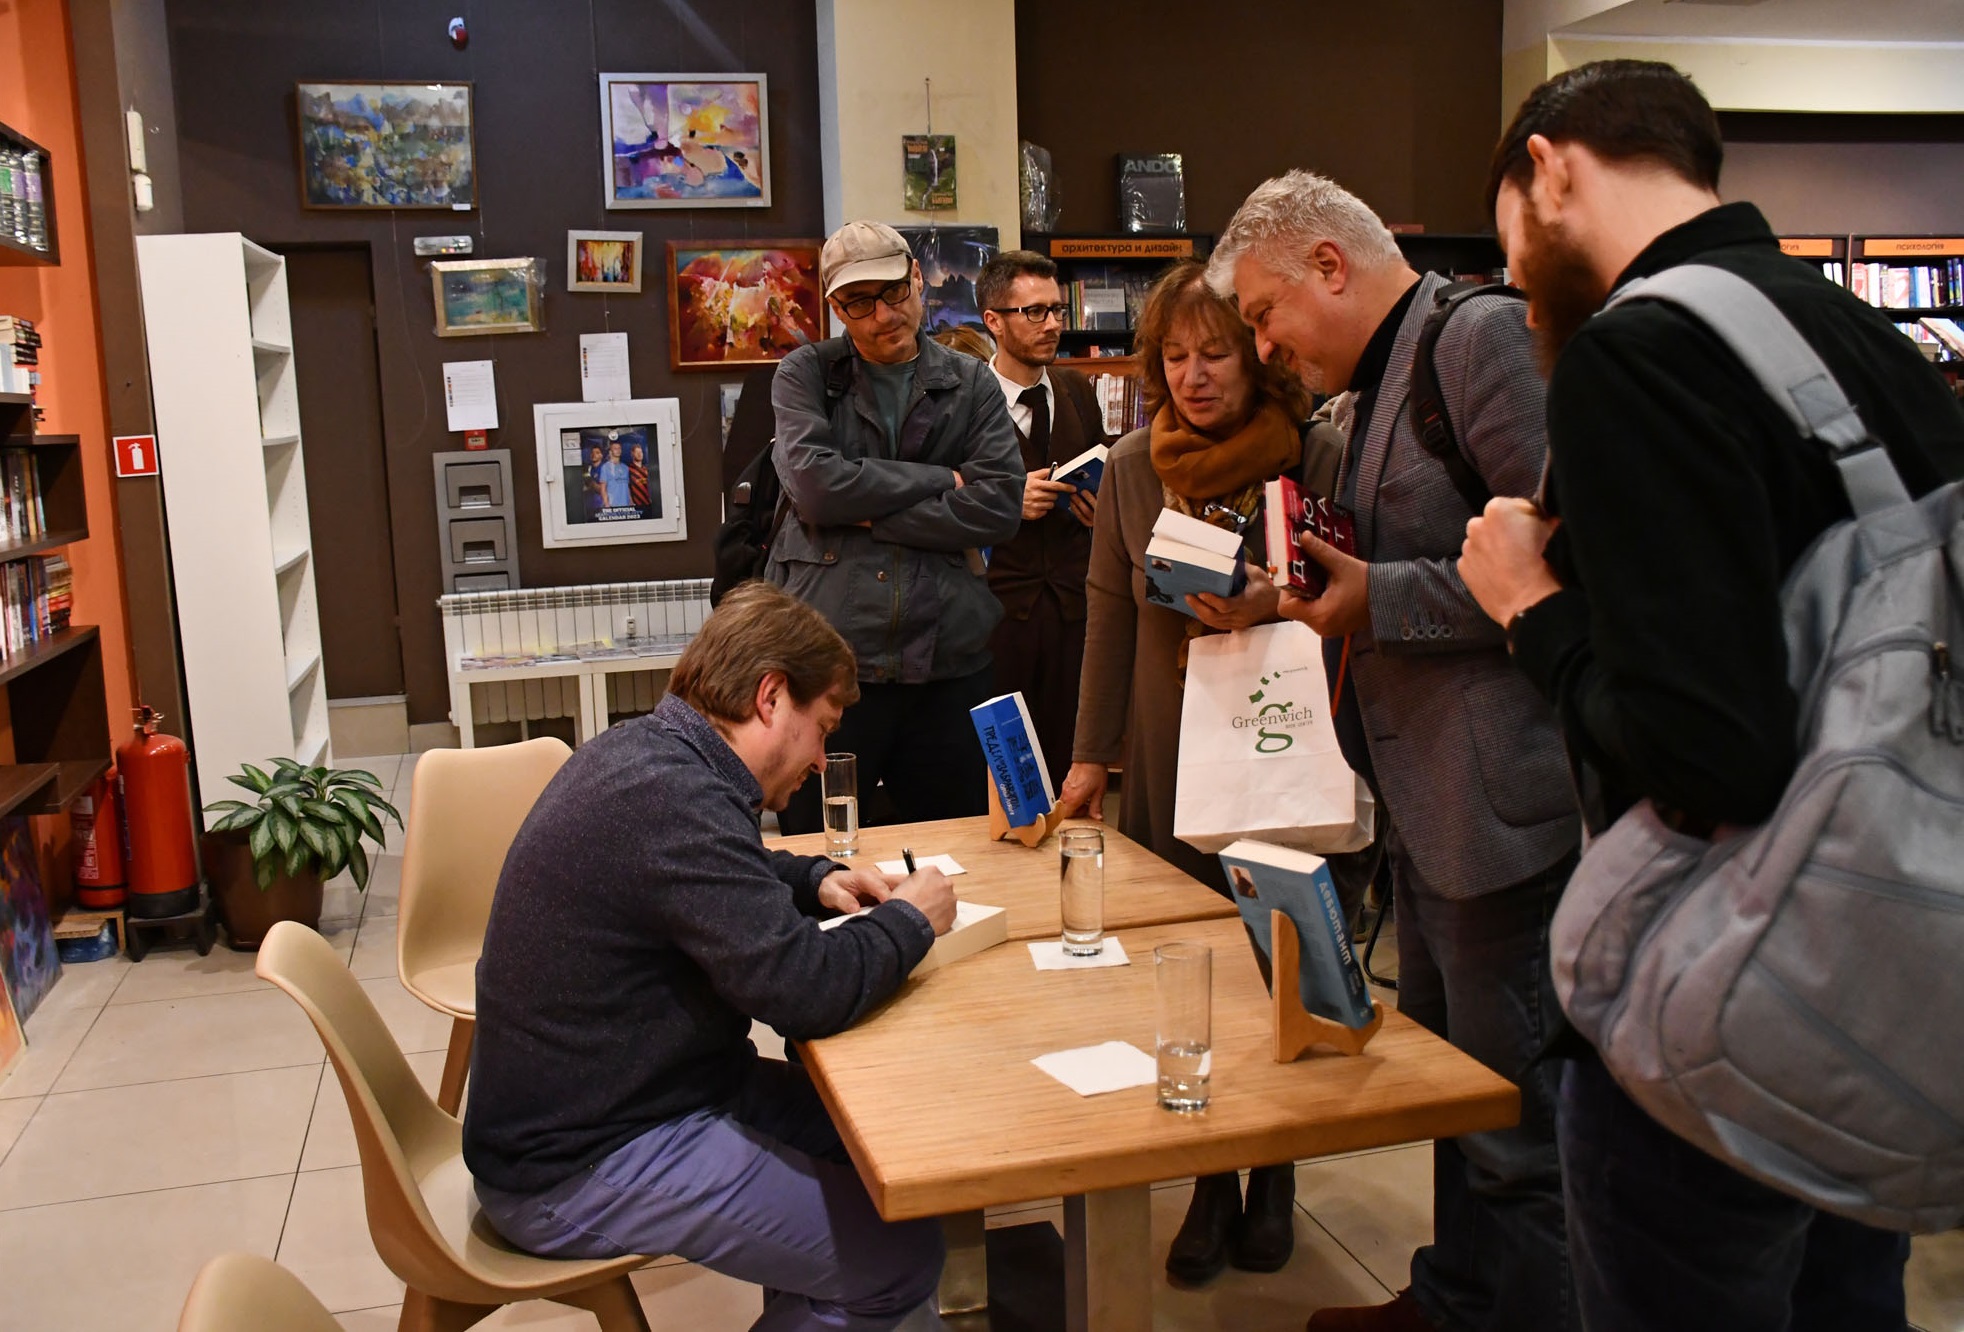 Опашка за автографи се изви на представянето в София